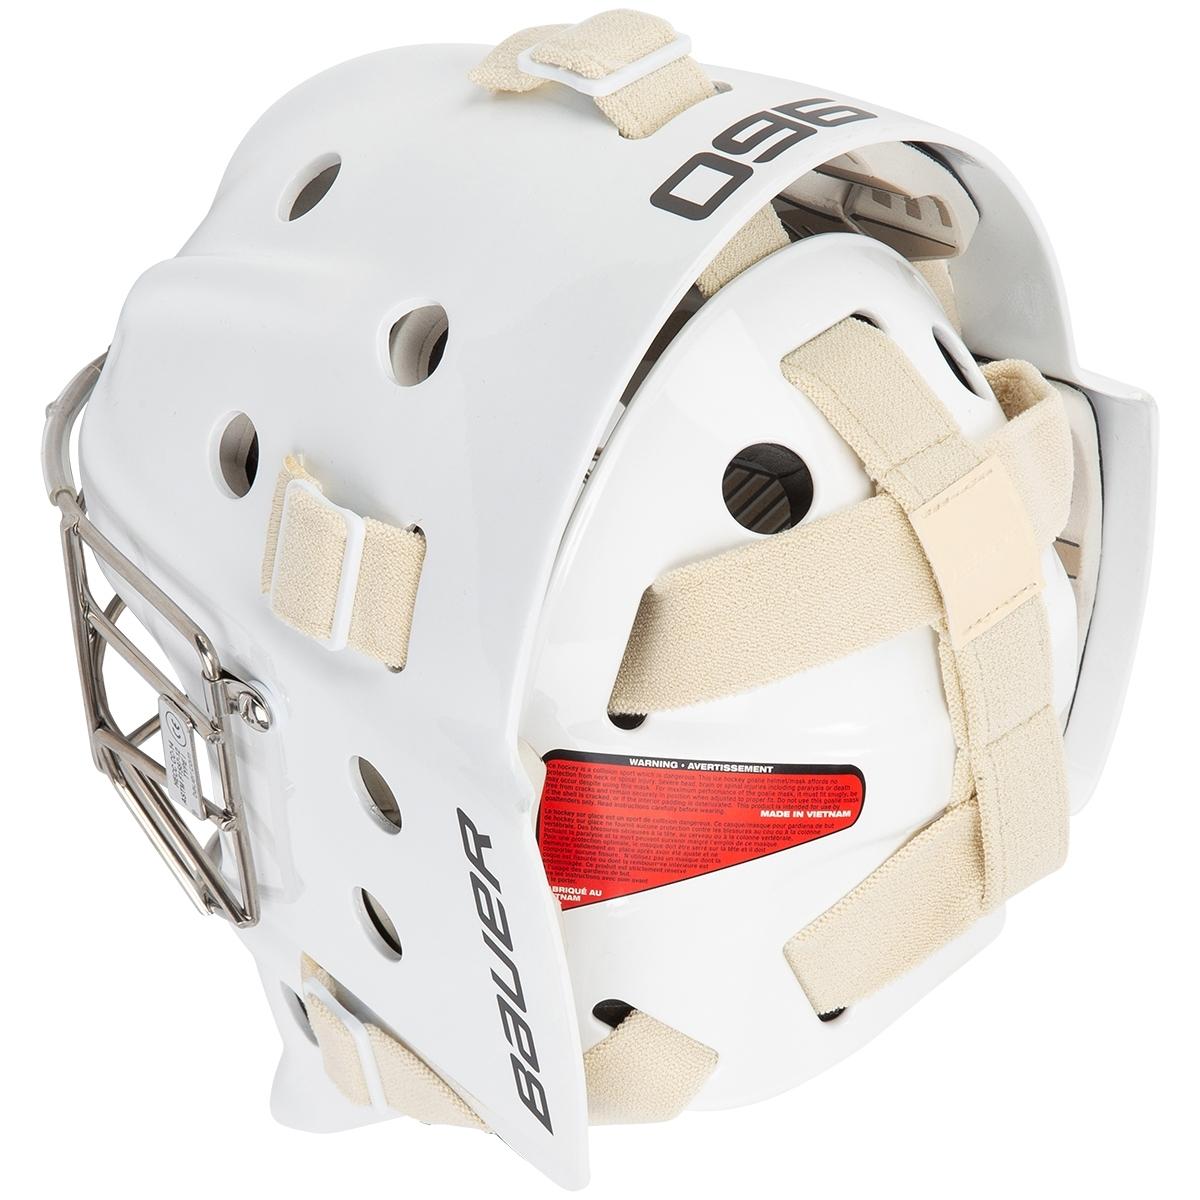 Bauer Profile 960 Goalie Mask - Non Cert. Cat Eye - Senior White S